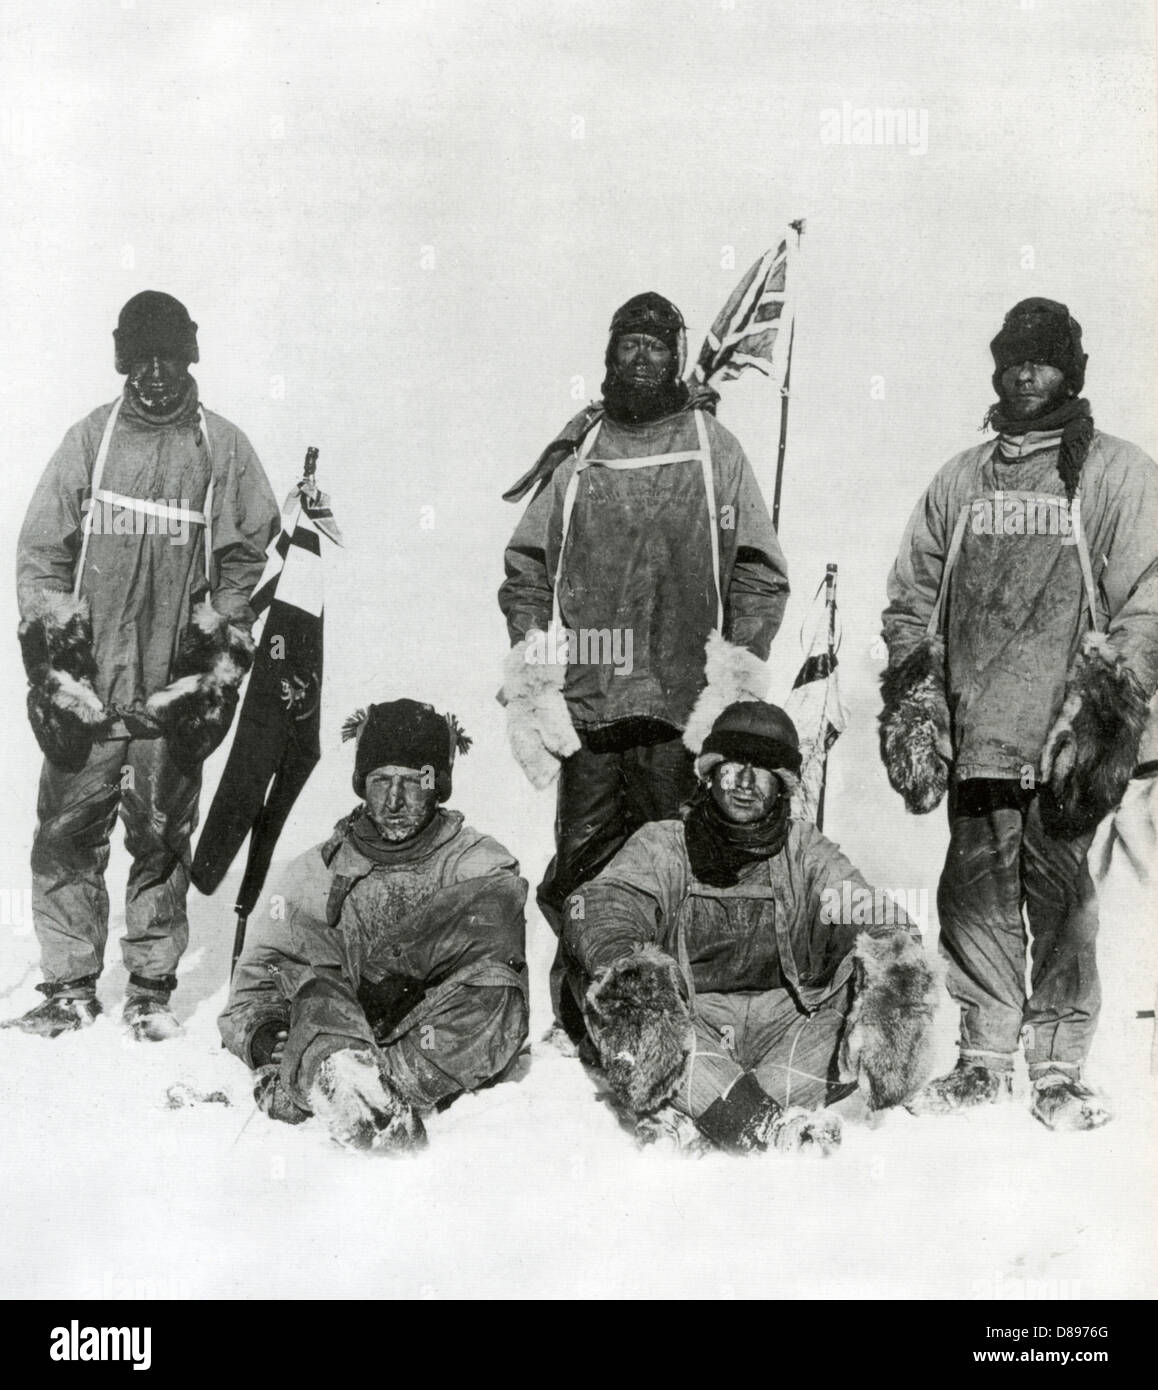 ROBERT FALCON SCOTT und Party am Südpol am 17. Januar 1912 am Tag nachdem Amundsen es erreicht hatte. Siehe Beschreibung unten Stockfoto